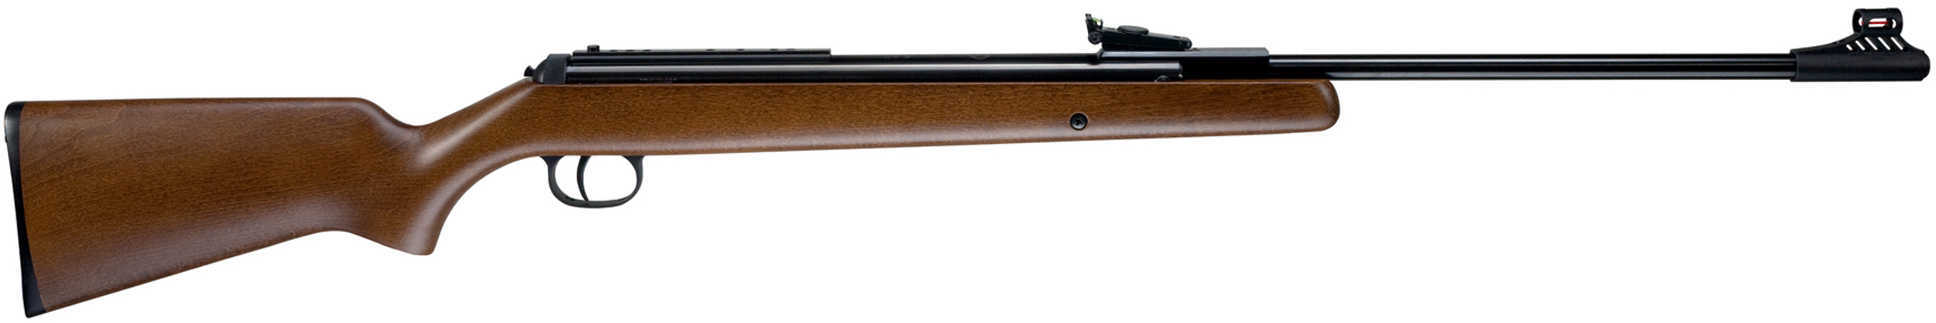 RWS Model 34 Air Rifle .177